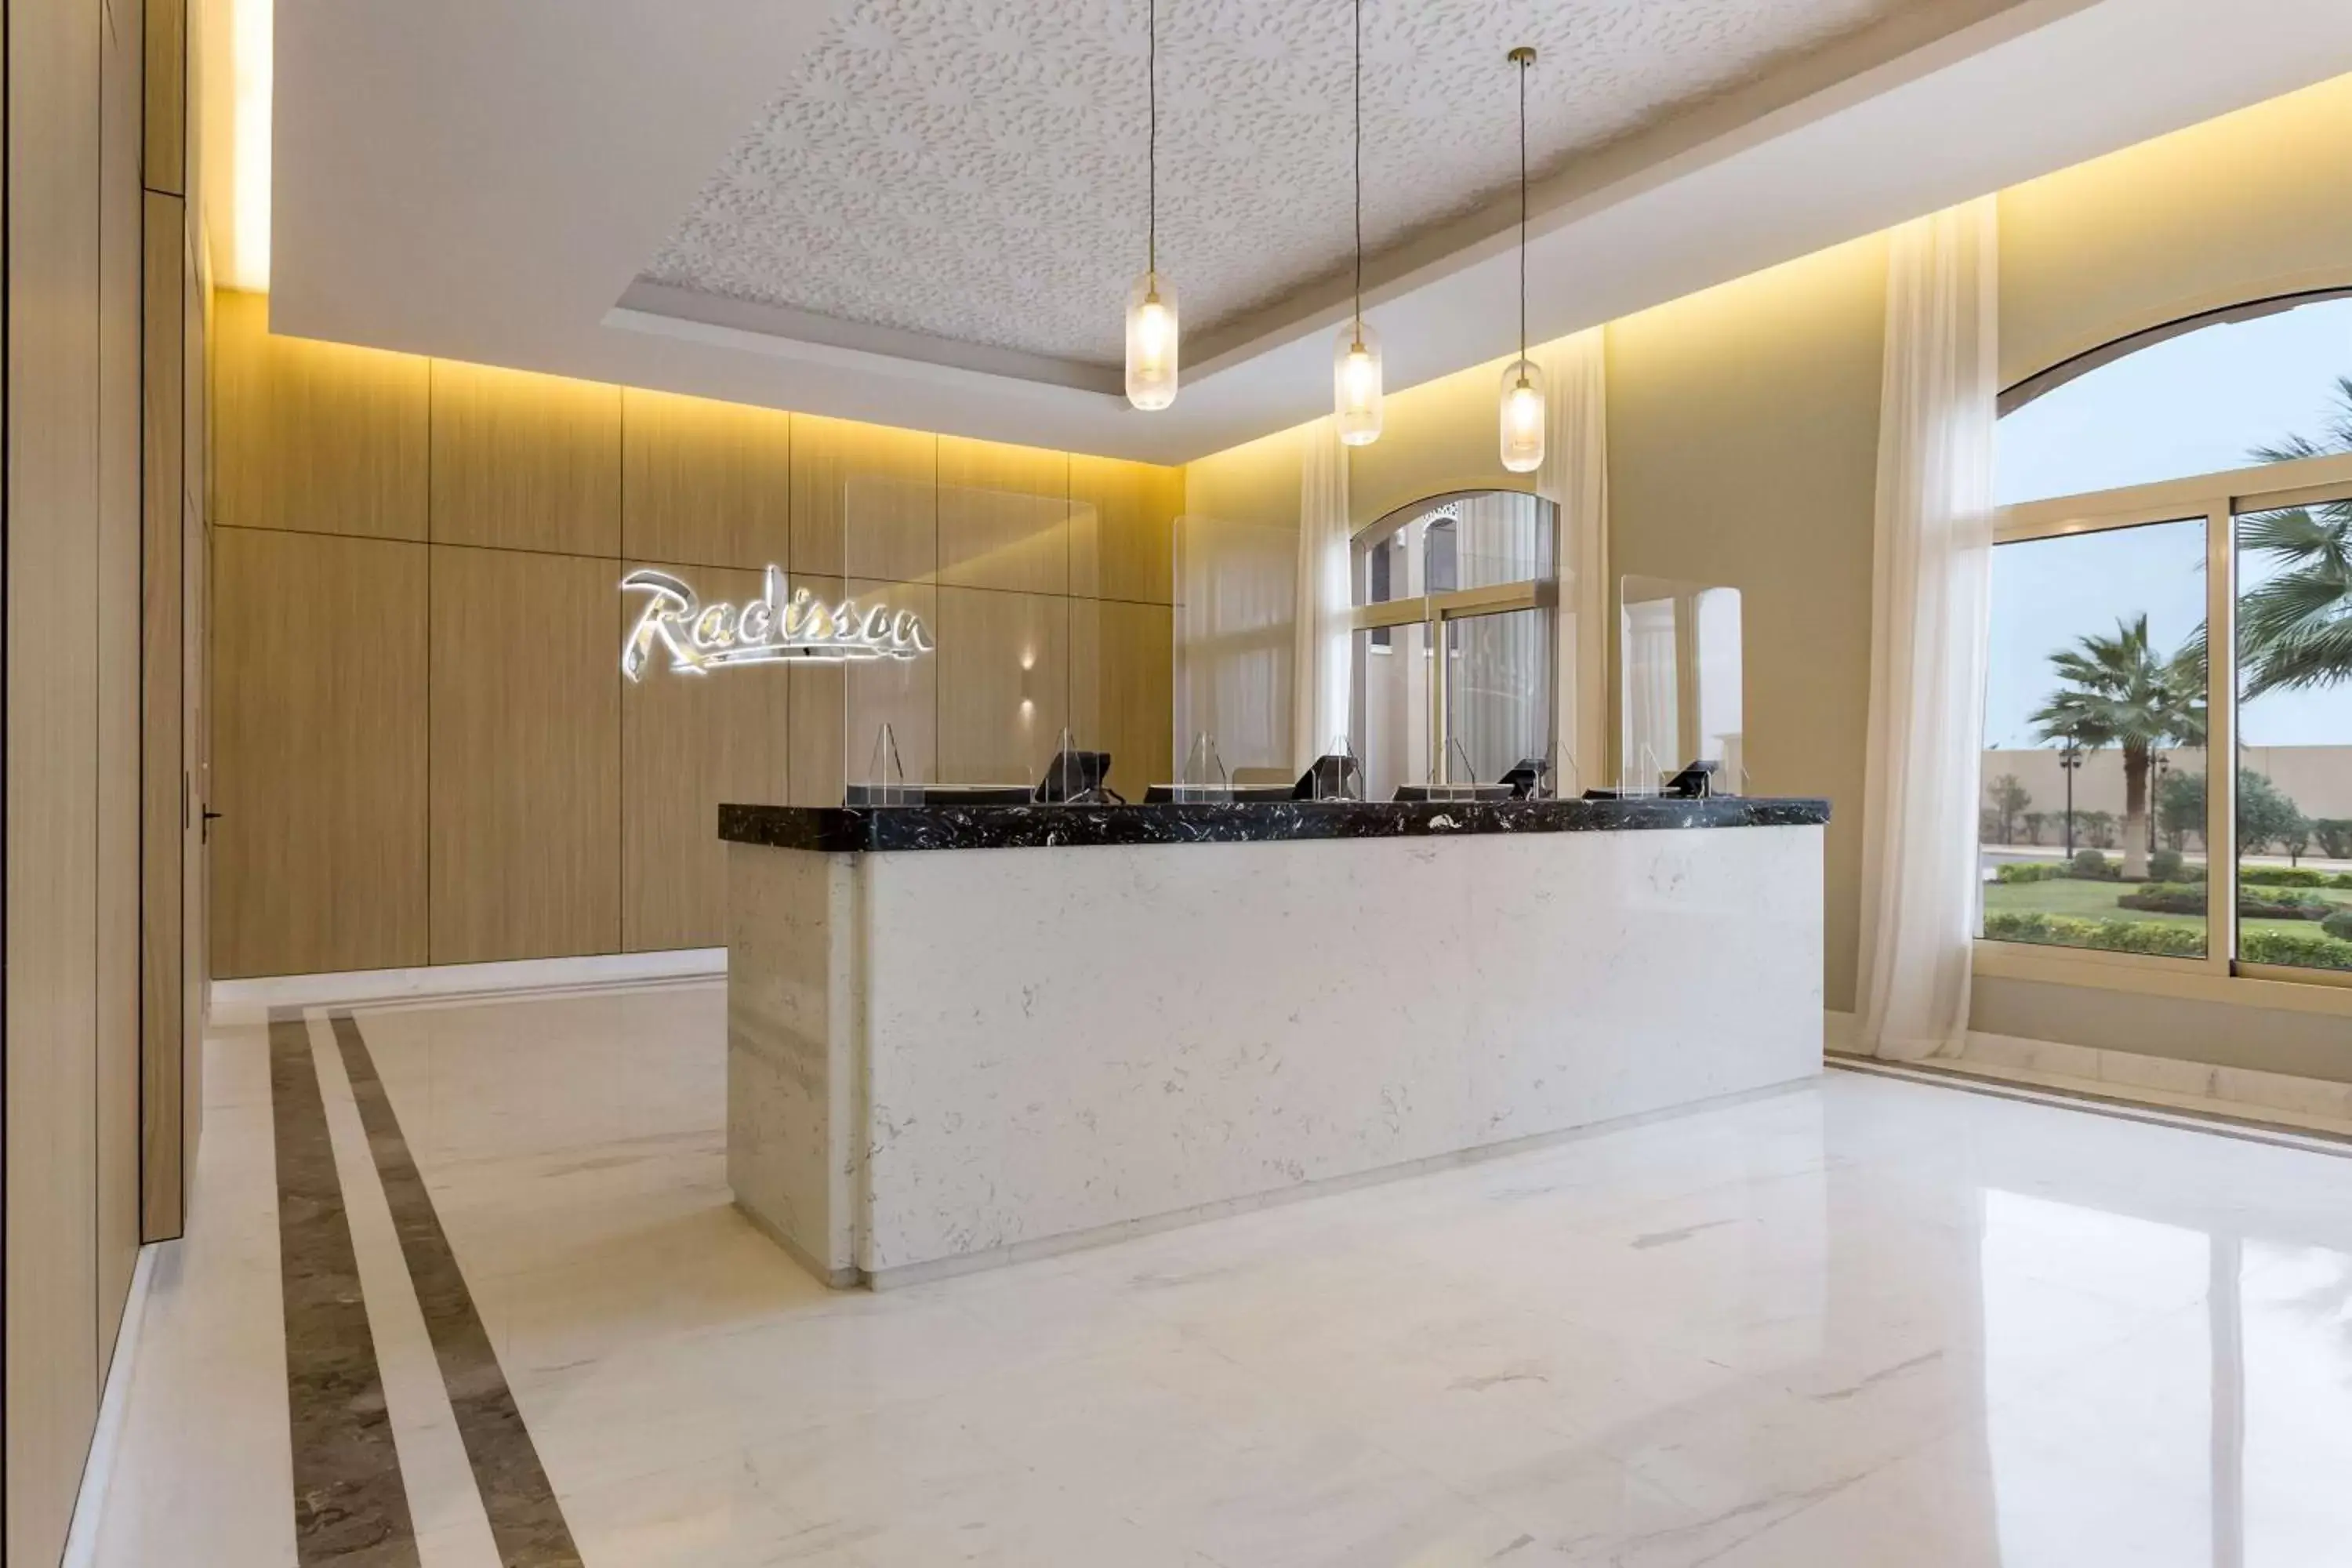 Lobby or reception, Lobby/Reception in Radisson Hotel Riyadh Airport